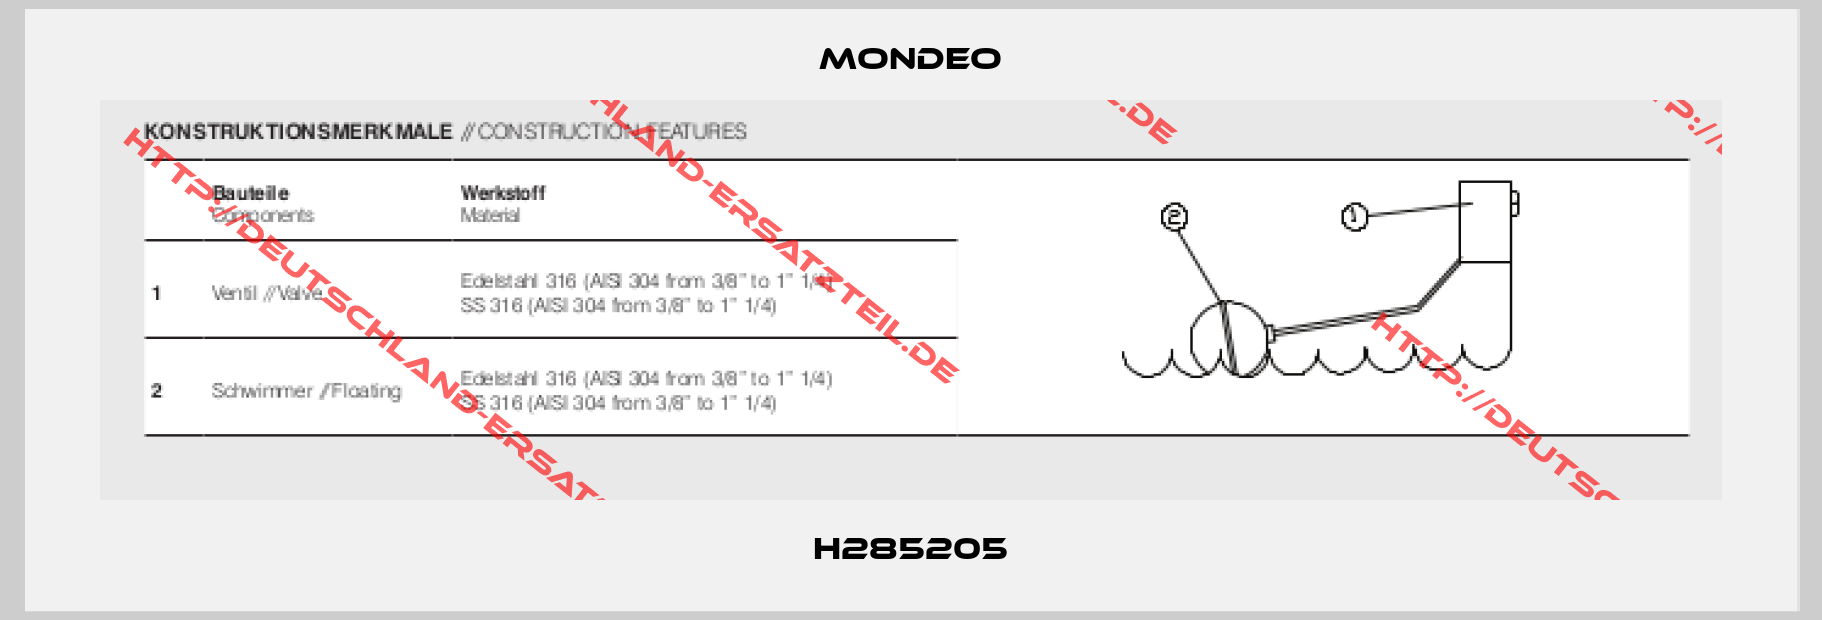 Mondeo-H285205